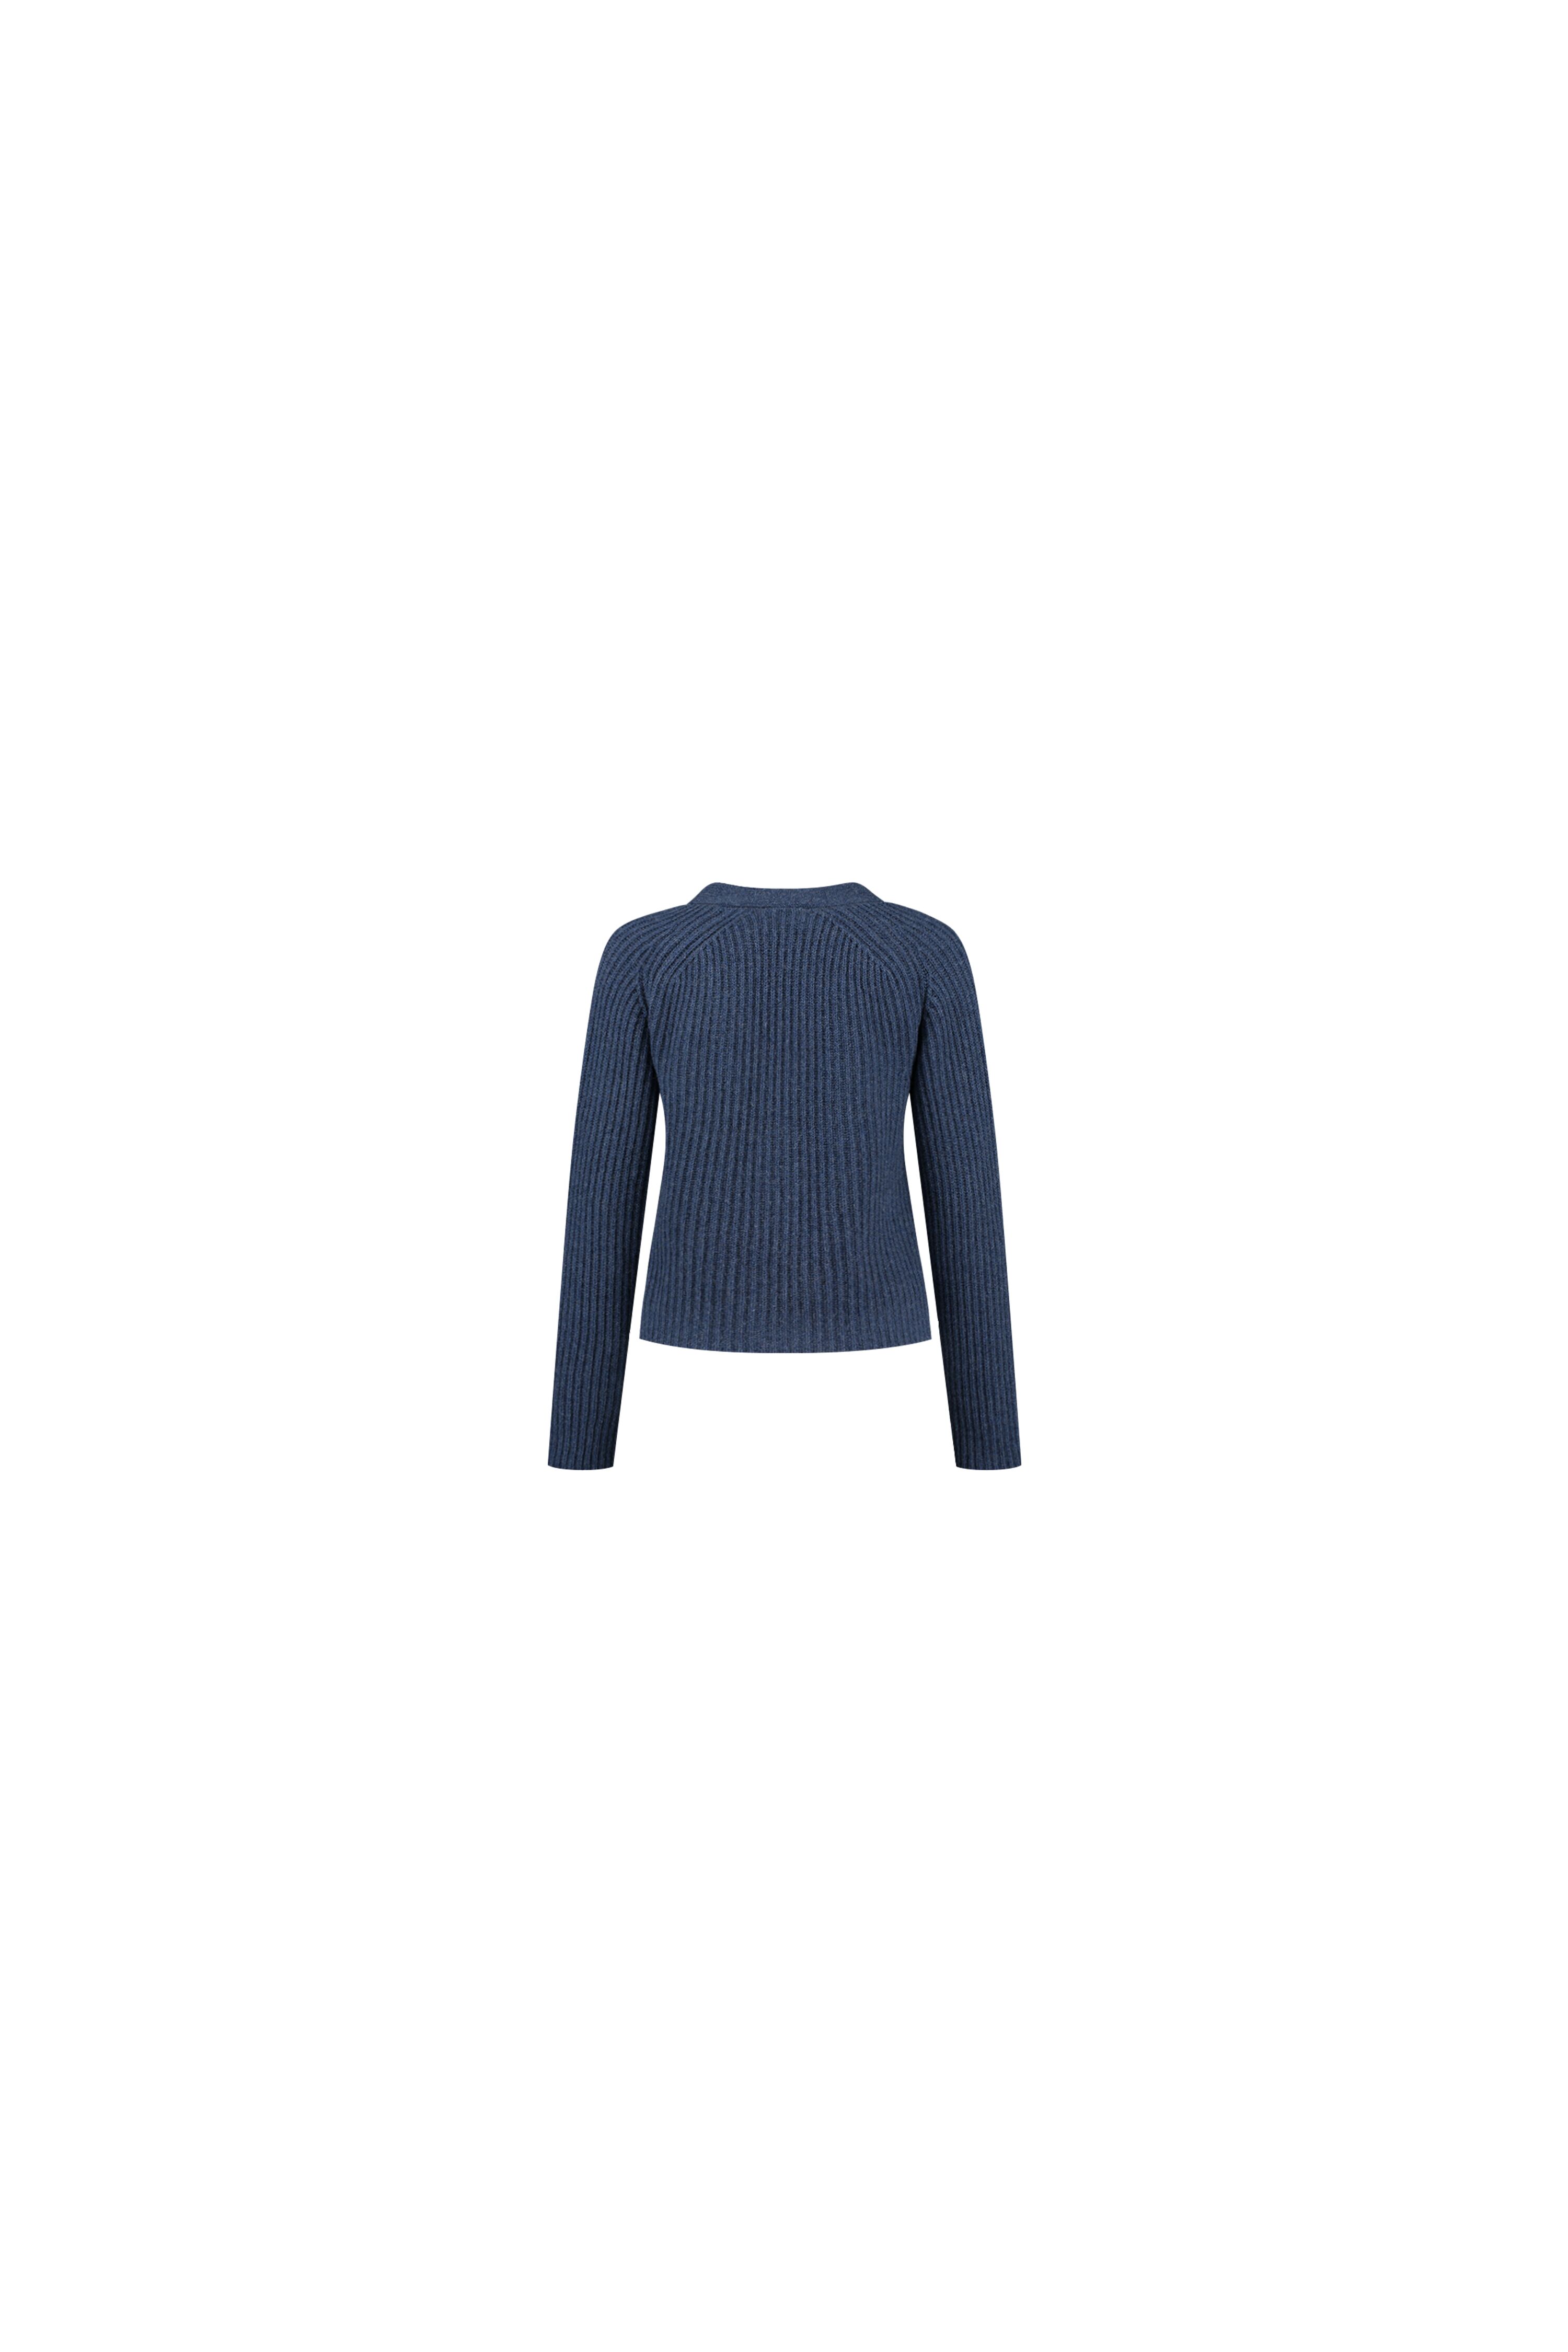 Ganni Rib Knit Cardigan Dutch Blue - K1475 2498 710 | Bloom Fashion